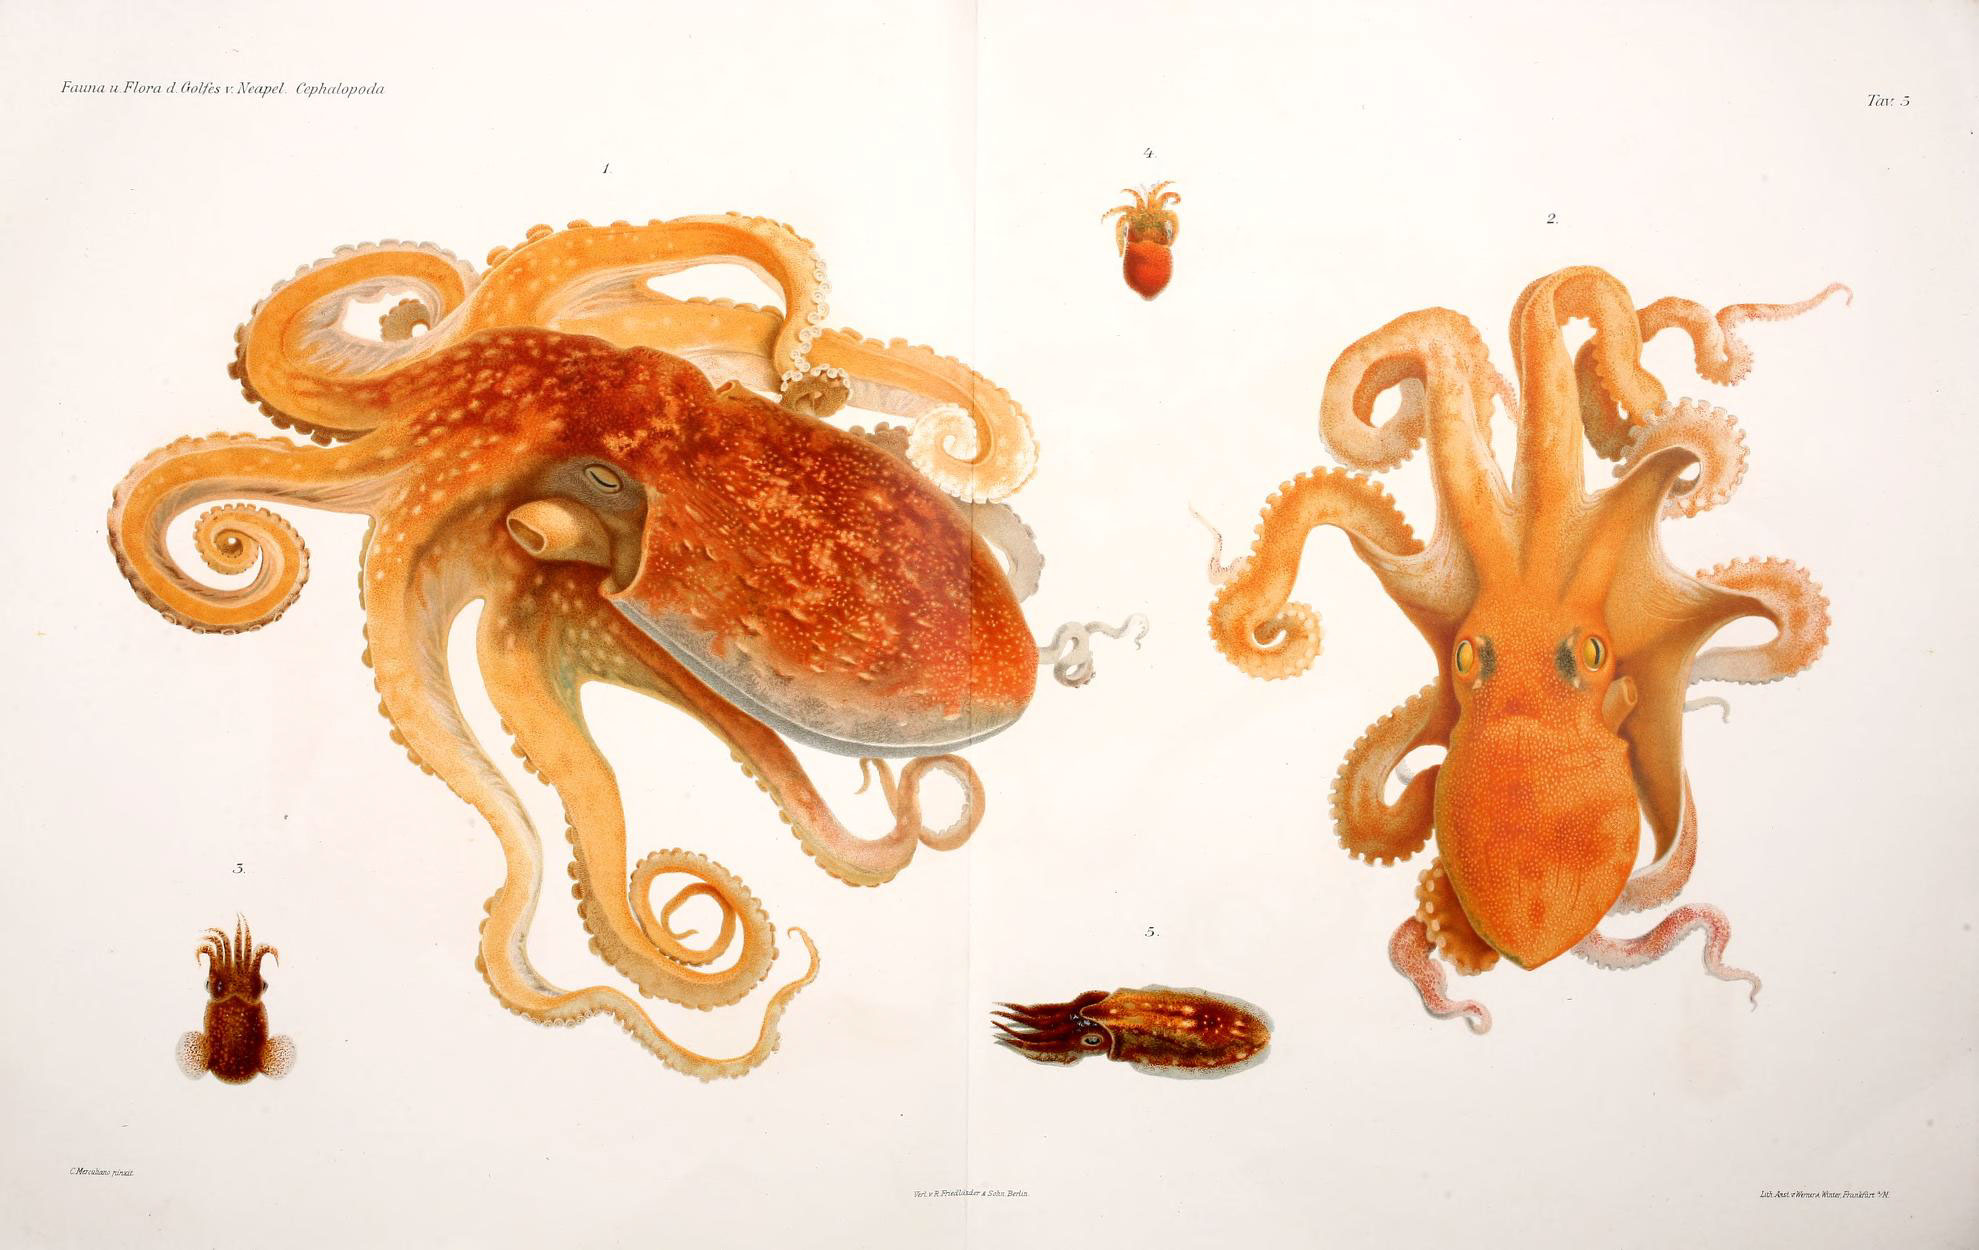 Sú chobotnice „mimozemšťania“ z vesmíru? Aký je pôvod tohto záhadného tvora? 2